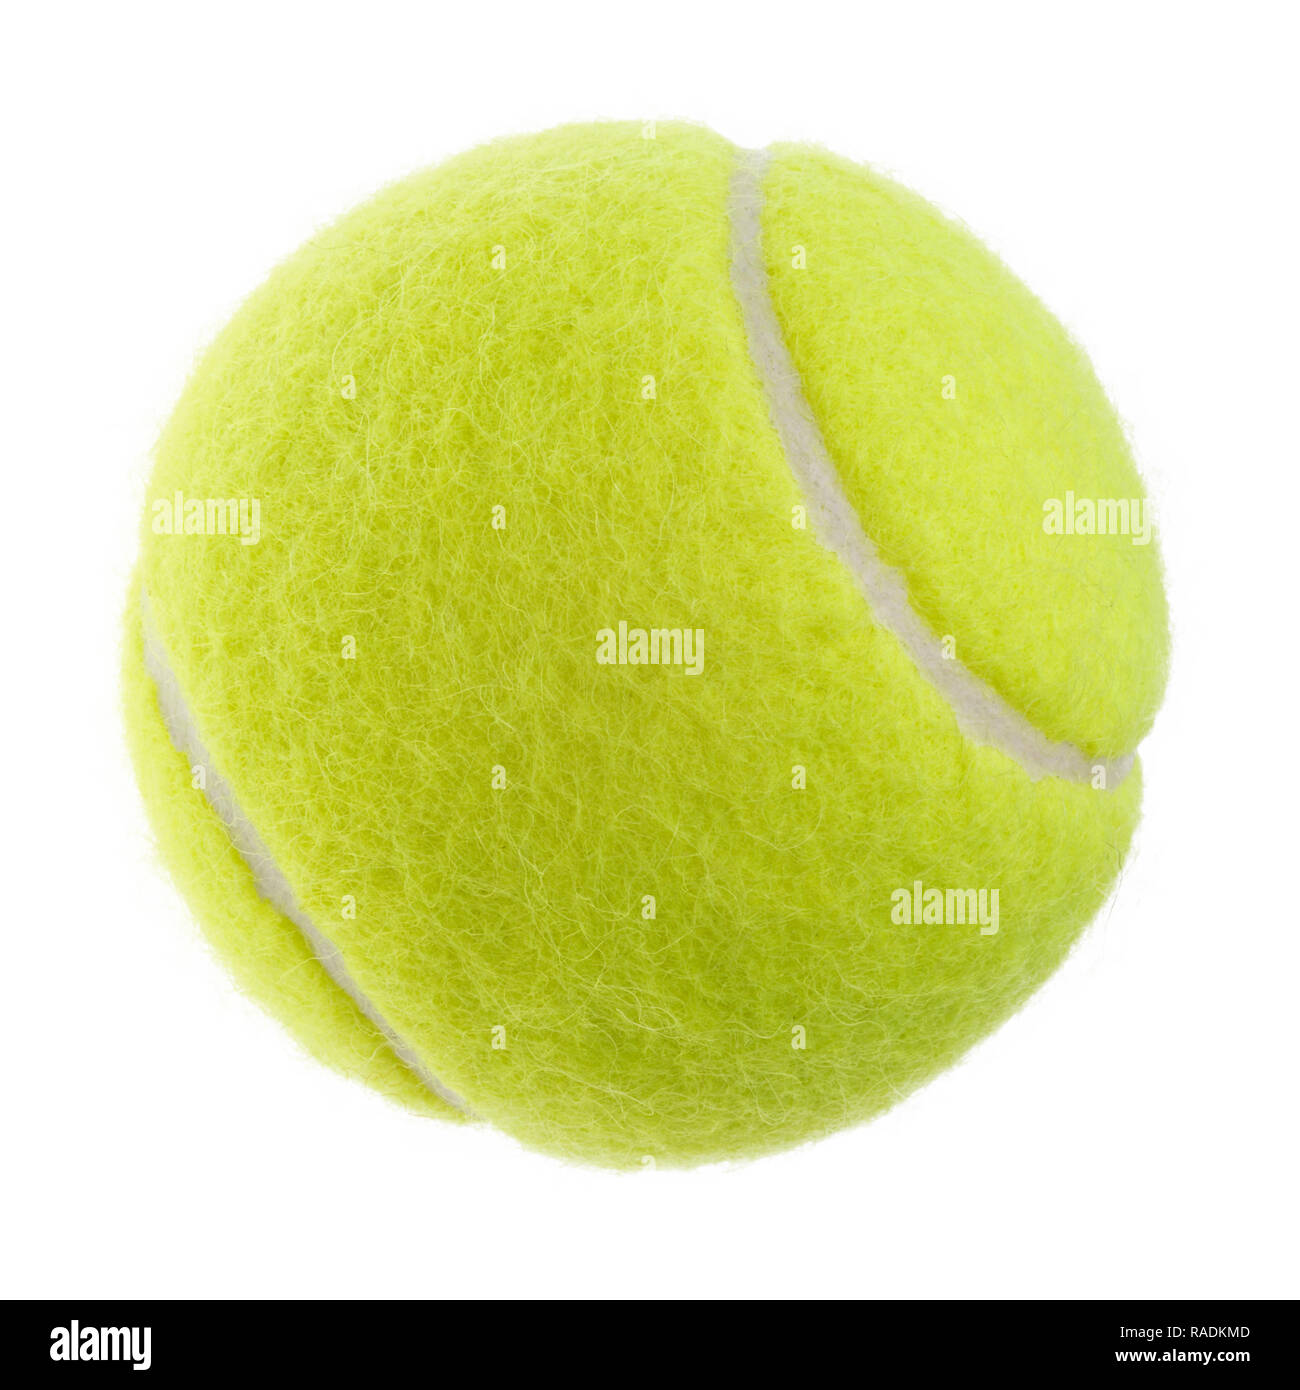 Objets isolés : balle de tennis jaune vert sur fond blanc Banque D'Images